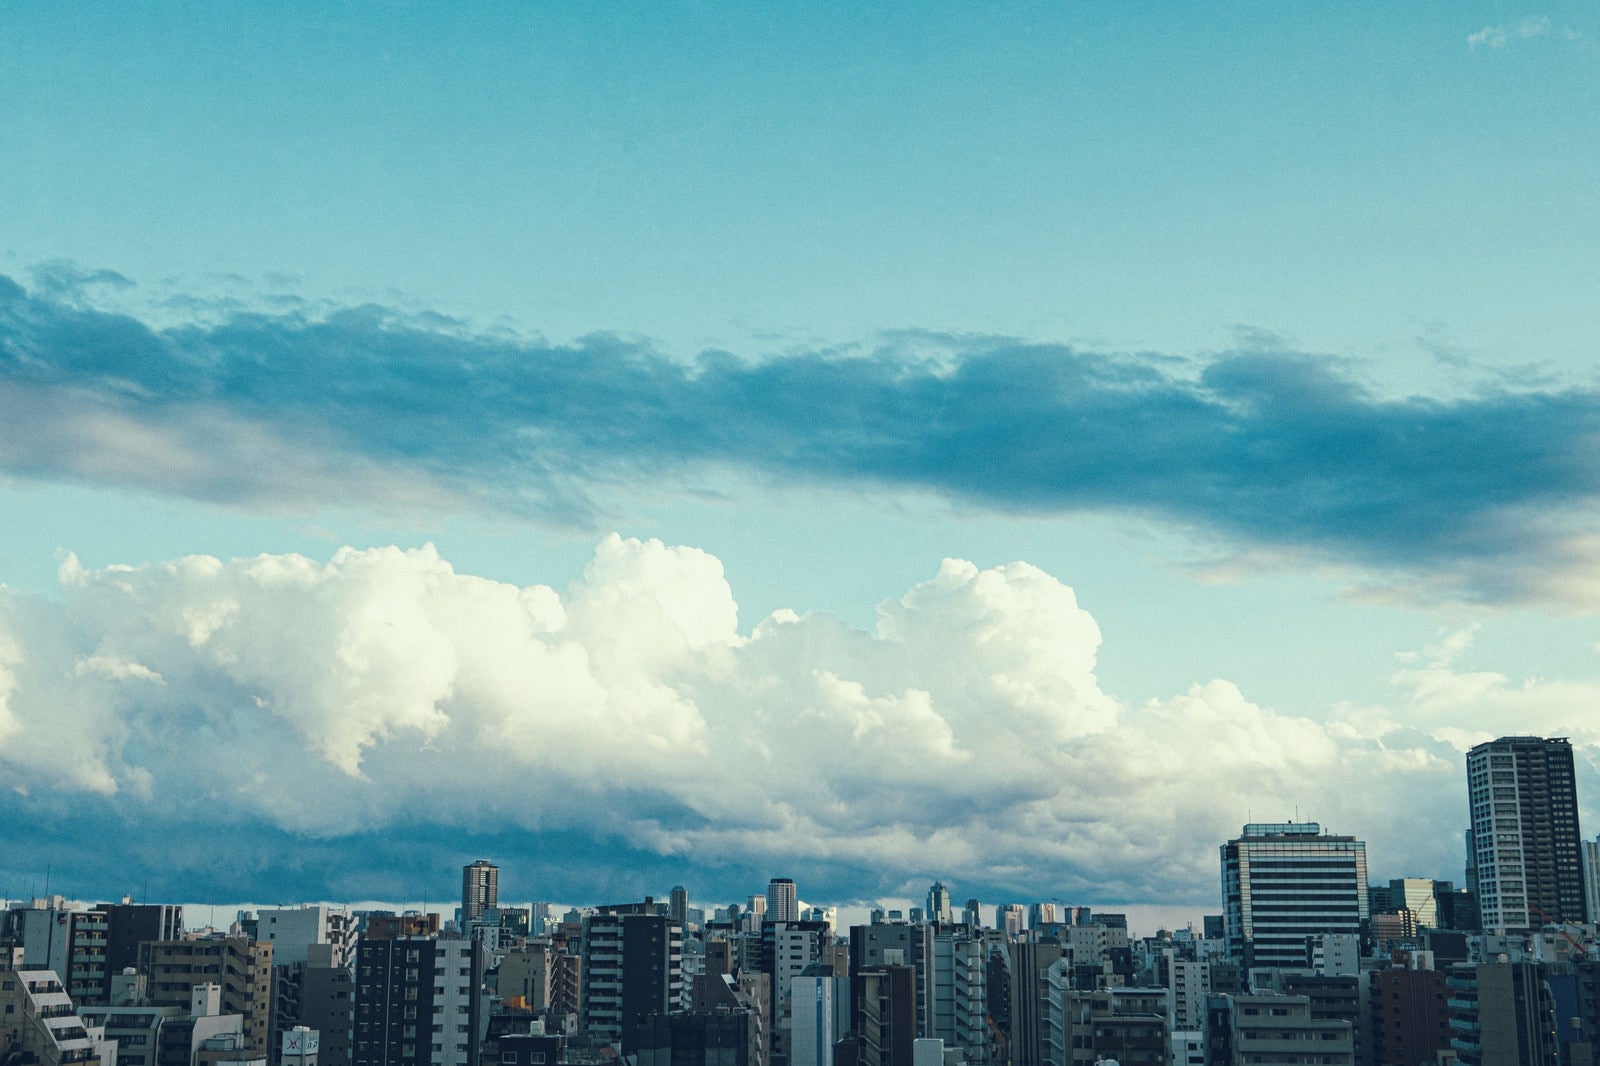 「都会のマンションと雲空」の写真